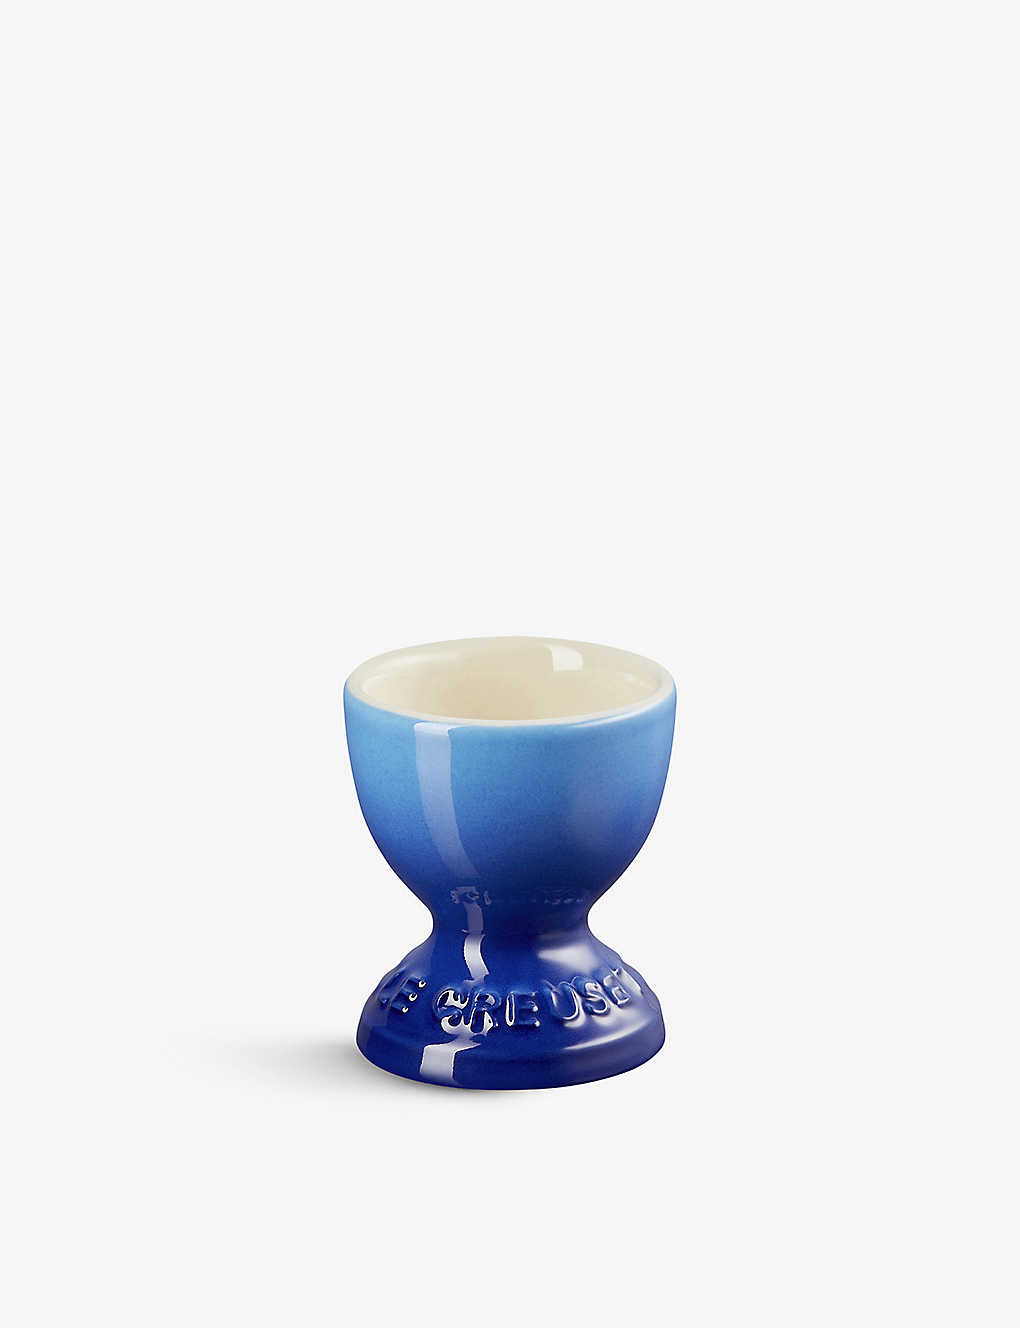 Le Creuset Azure Blue Stoneware Egg Cup